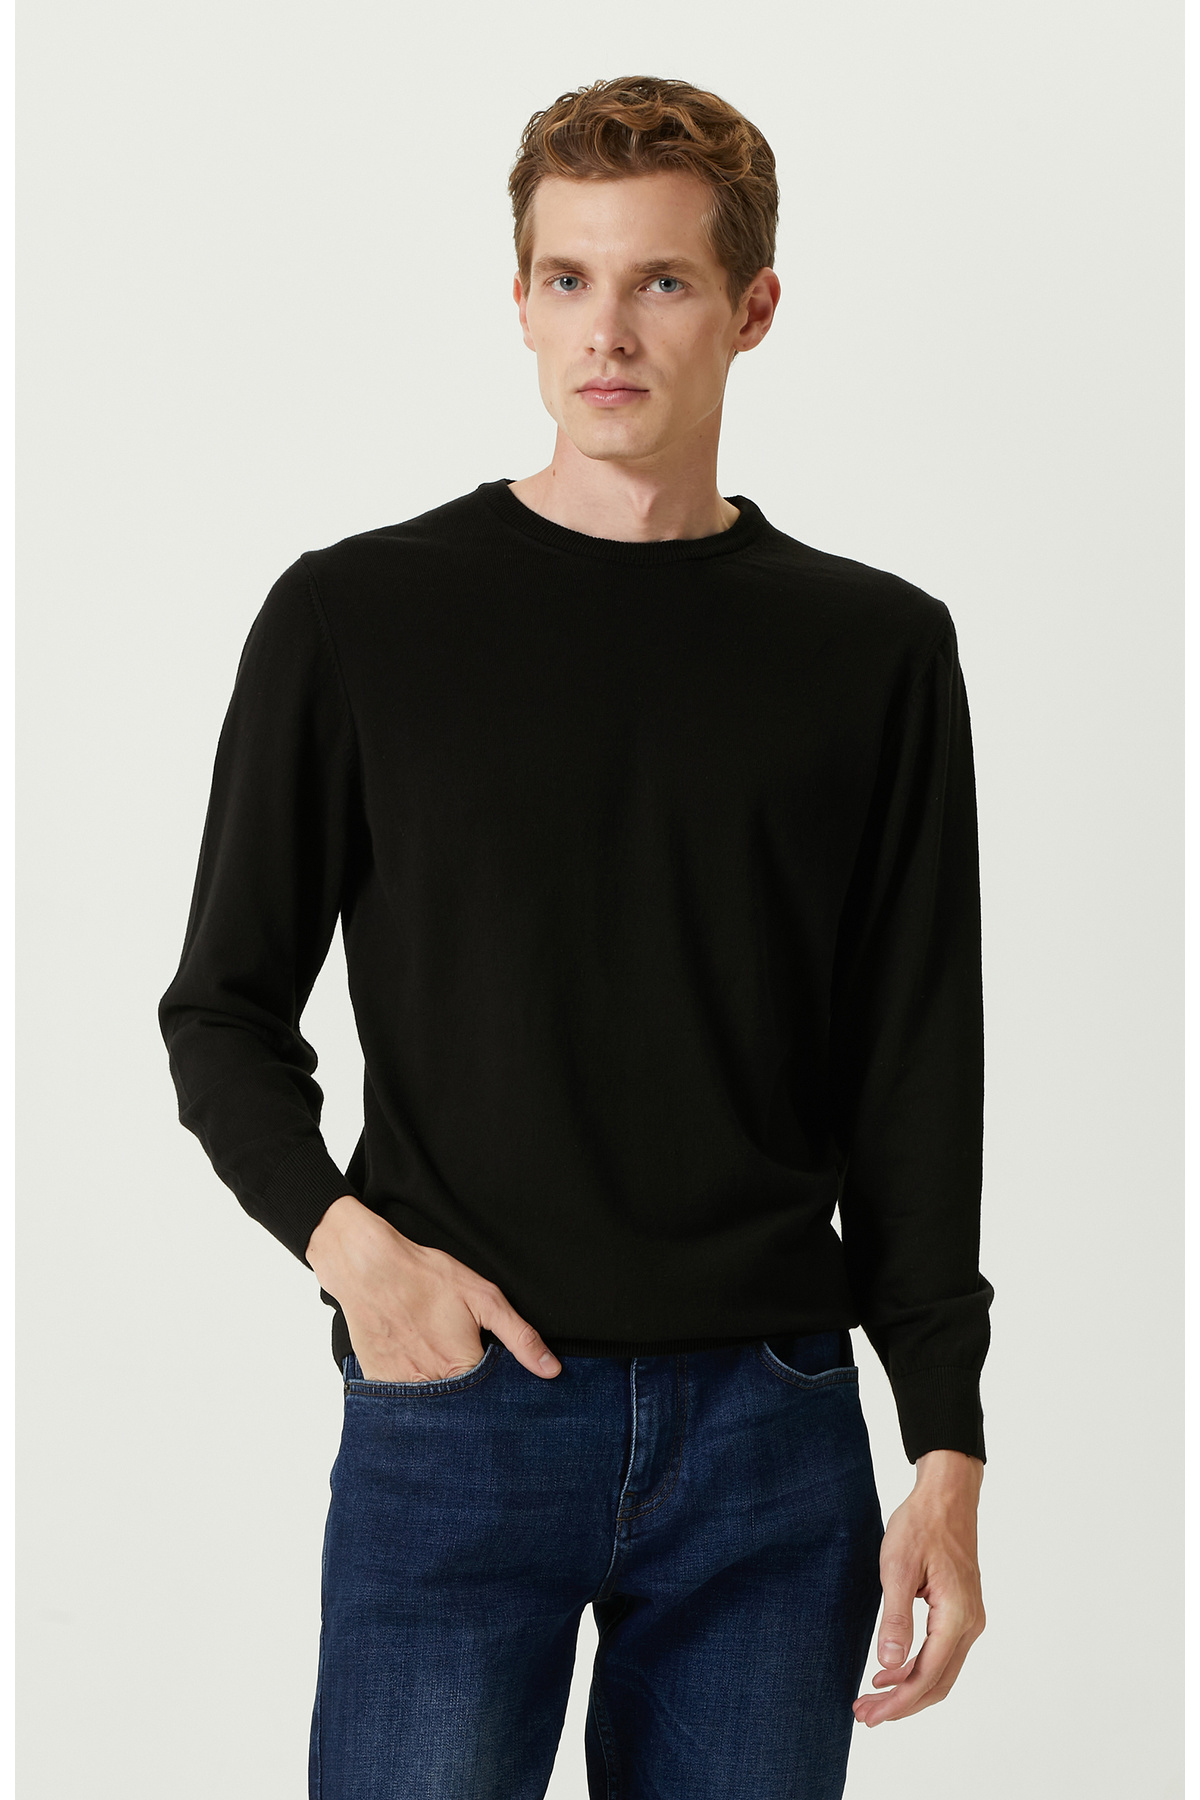 Черный базовый трикотажный свитер Network, черный